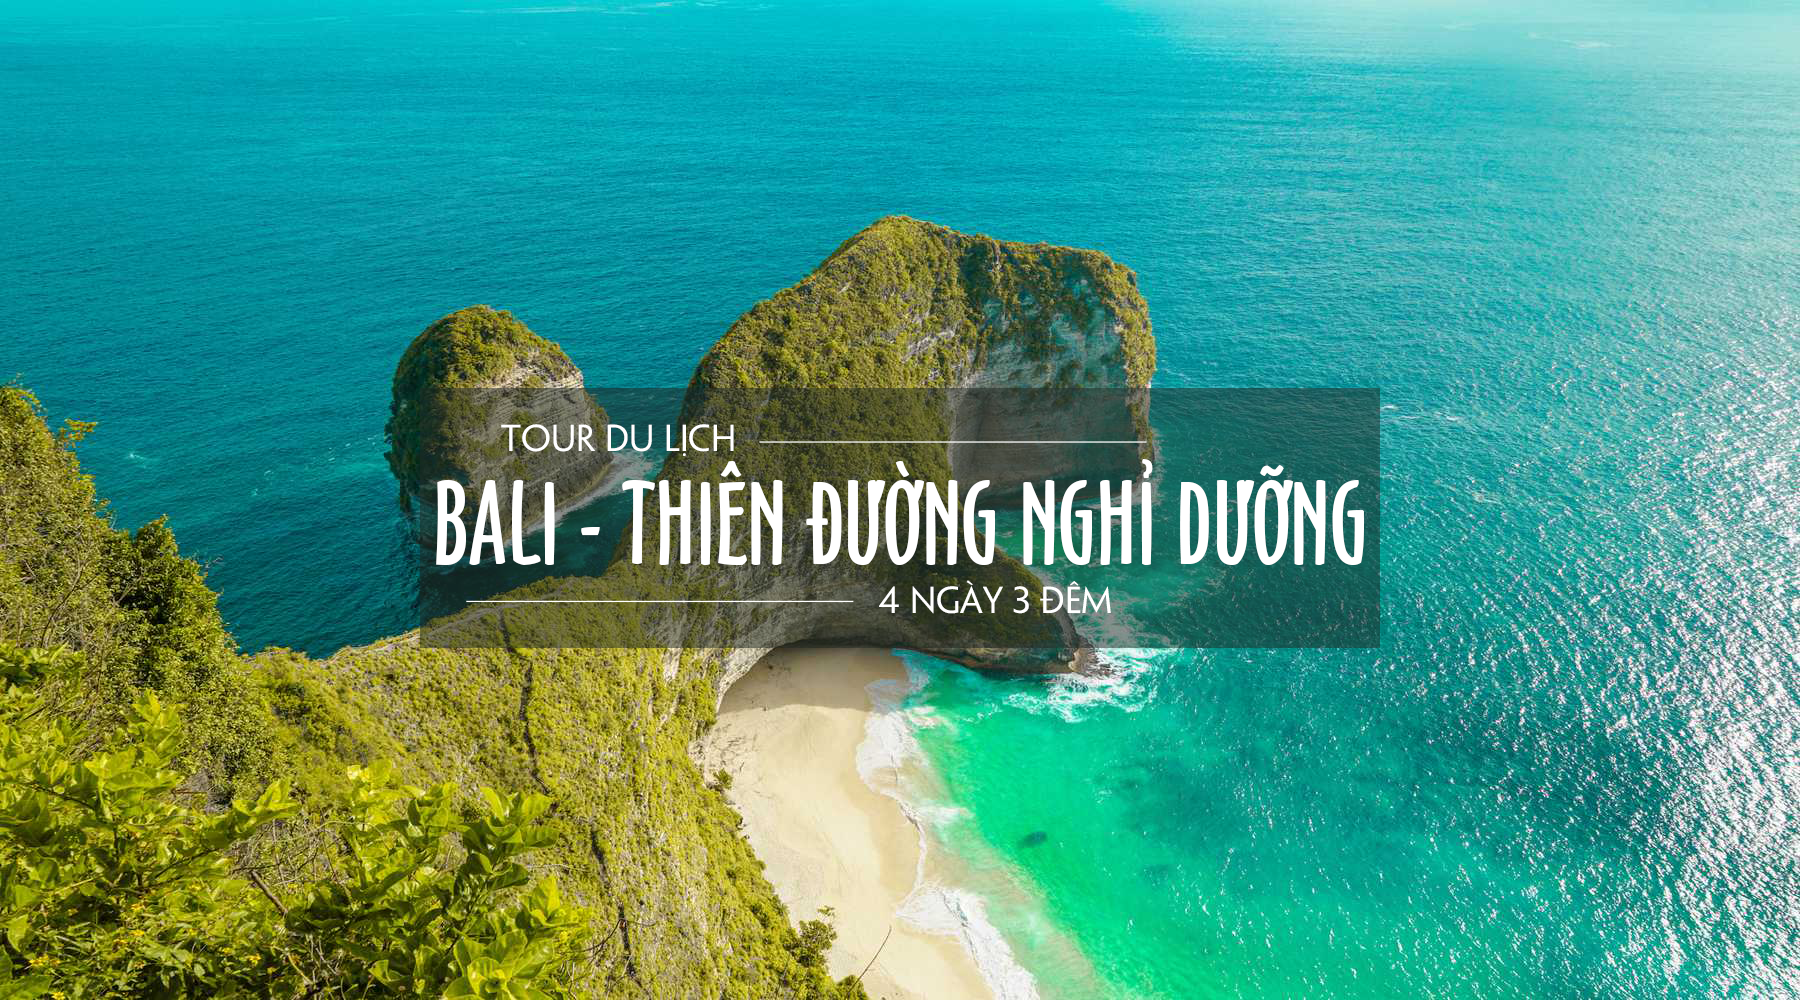 Đảo Bali - Thiên đường nghỉ dưỡng